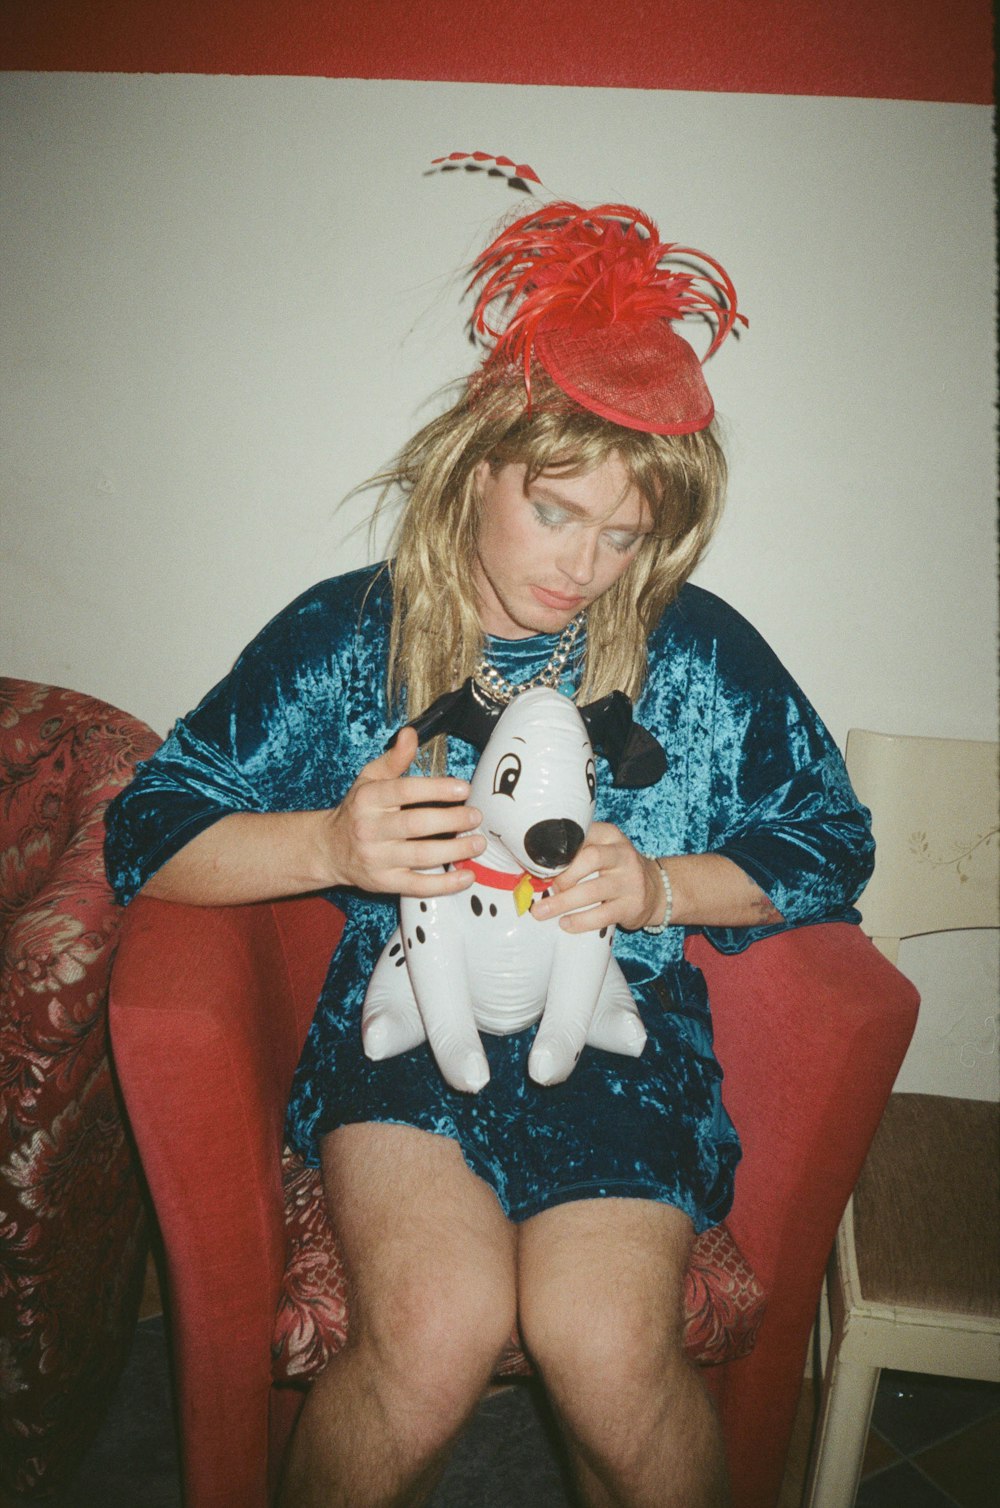 a woman holding a stuffed animal